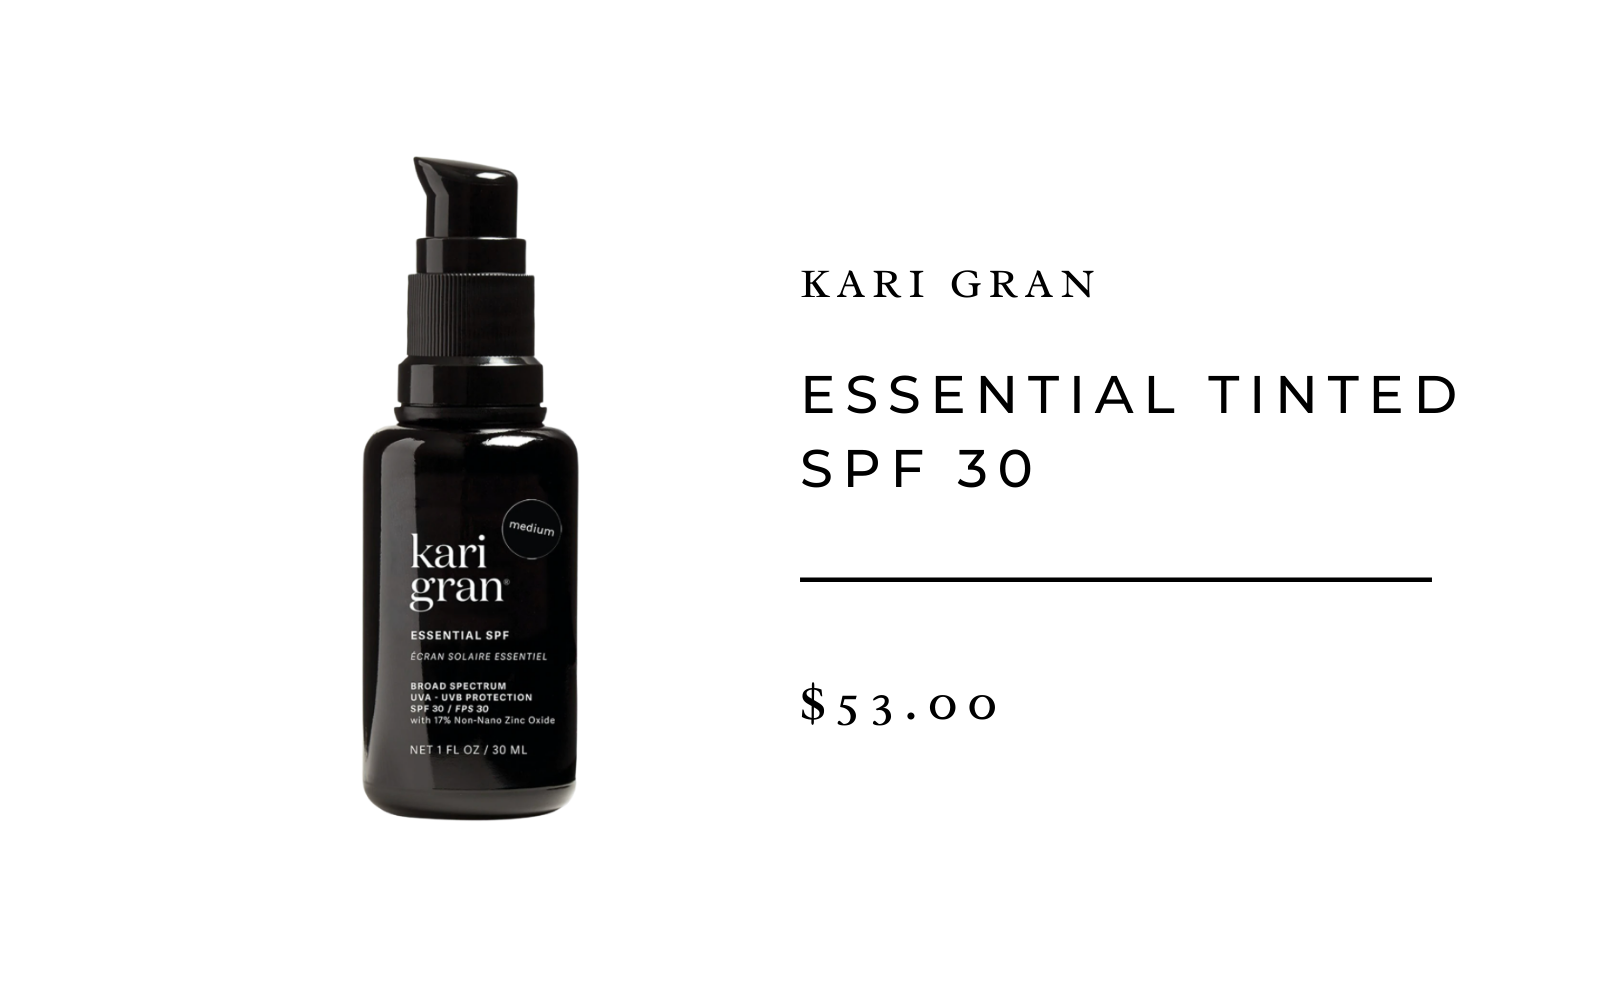 Kari Gran Essential Tinted SPF 30 